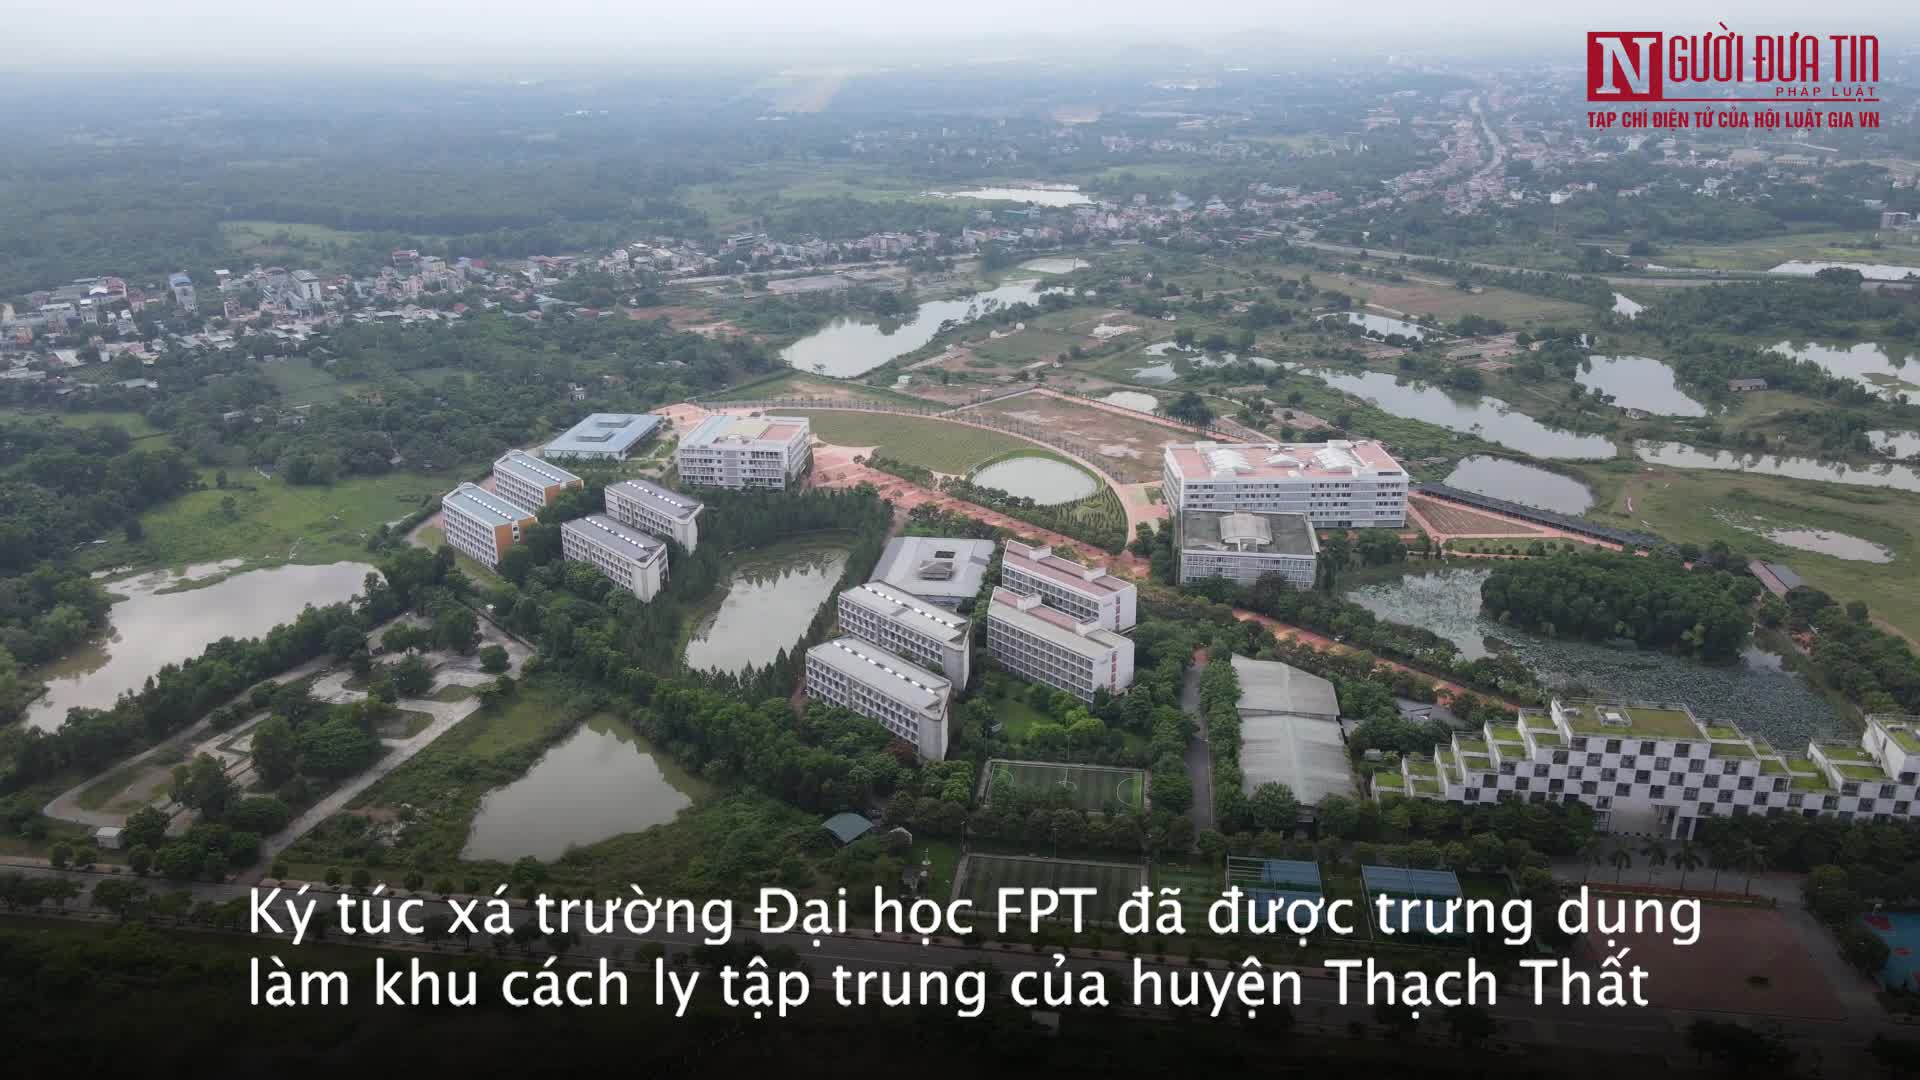 Sự kiện - Hà Nội: Bên trong khu cách ly 3.000 giường ở Thạch Thất